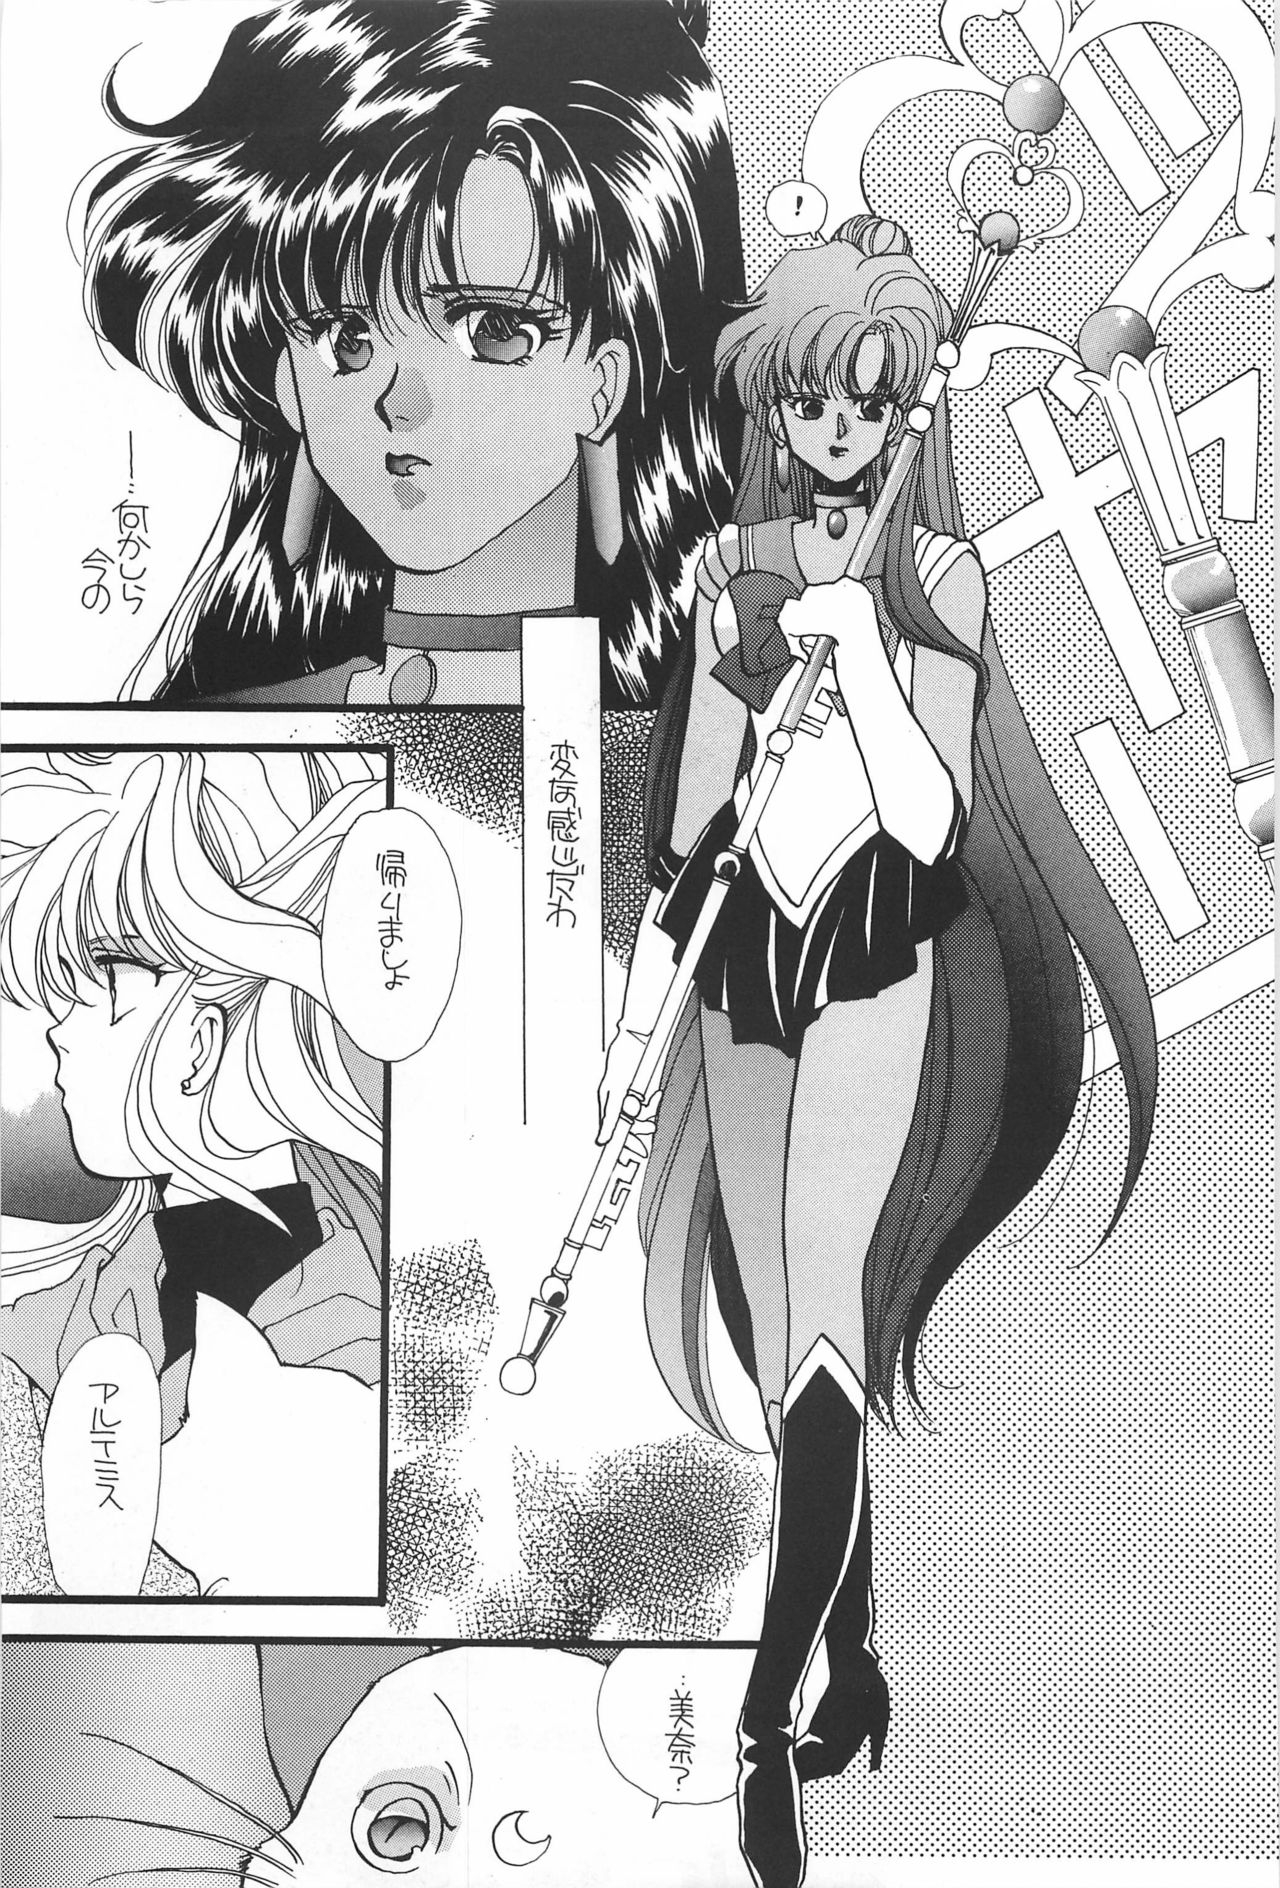 [Hello World (Muttri Moony)] Kaze no You ni Yume no You ni - Sailor Moon Collection (Sailor Moon) 96